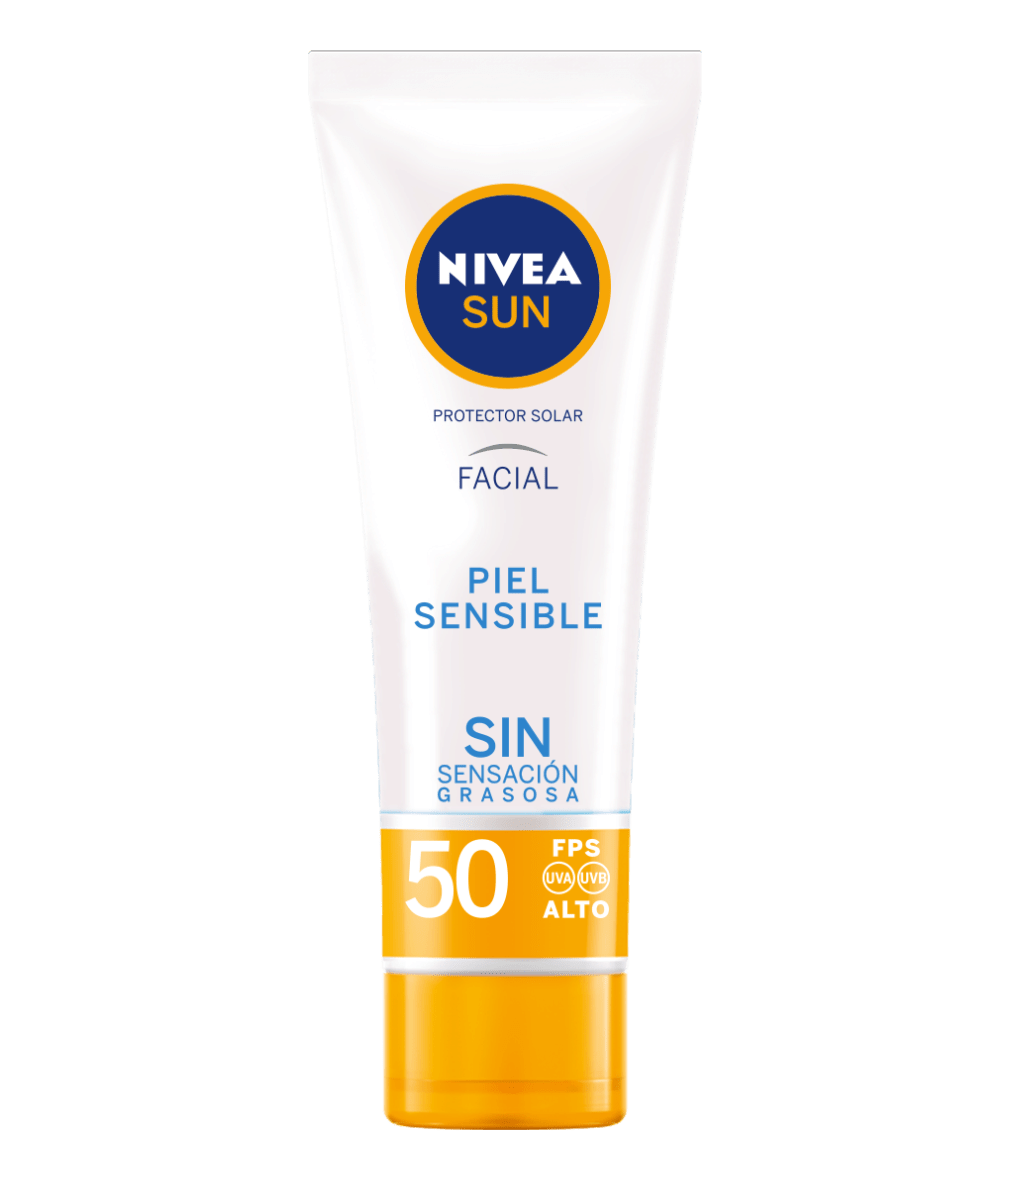 Uva uvb spf 50. Nivea SPF 50. Sun protect spf50 солнцезащитный крем для лица, 50 мл.. Nivea Sun 50 для чувствительной кожи. Nivea Sun 50 для аллергиков.